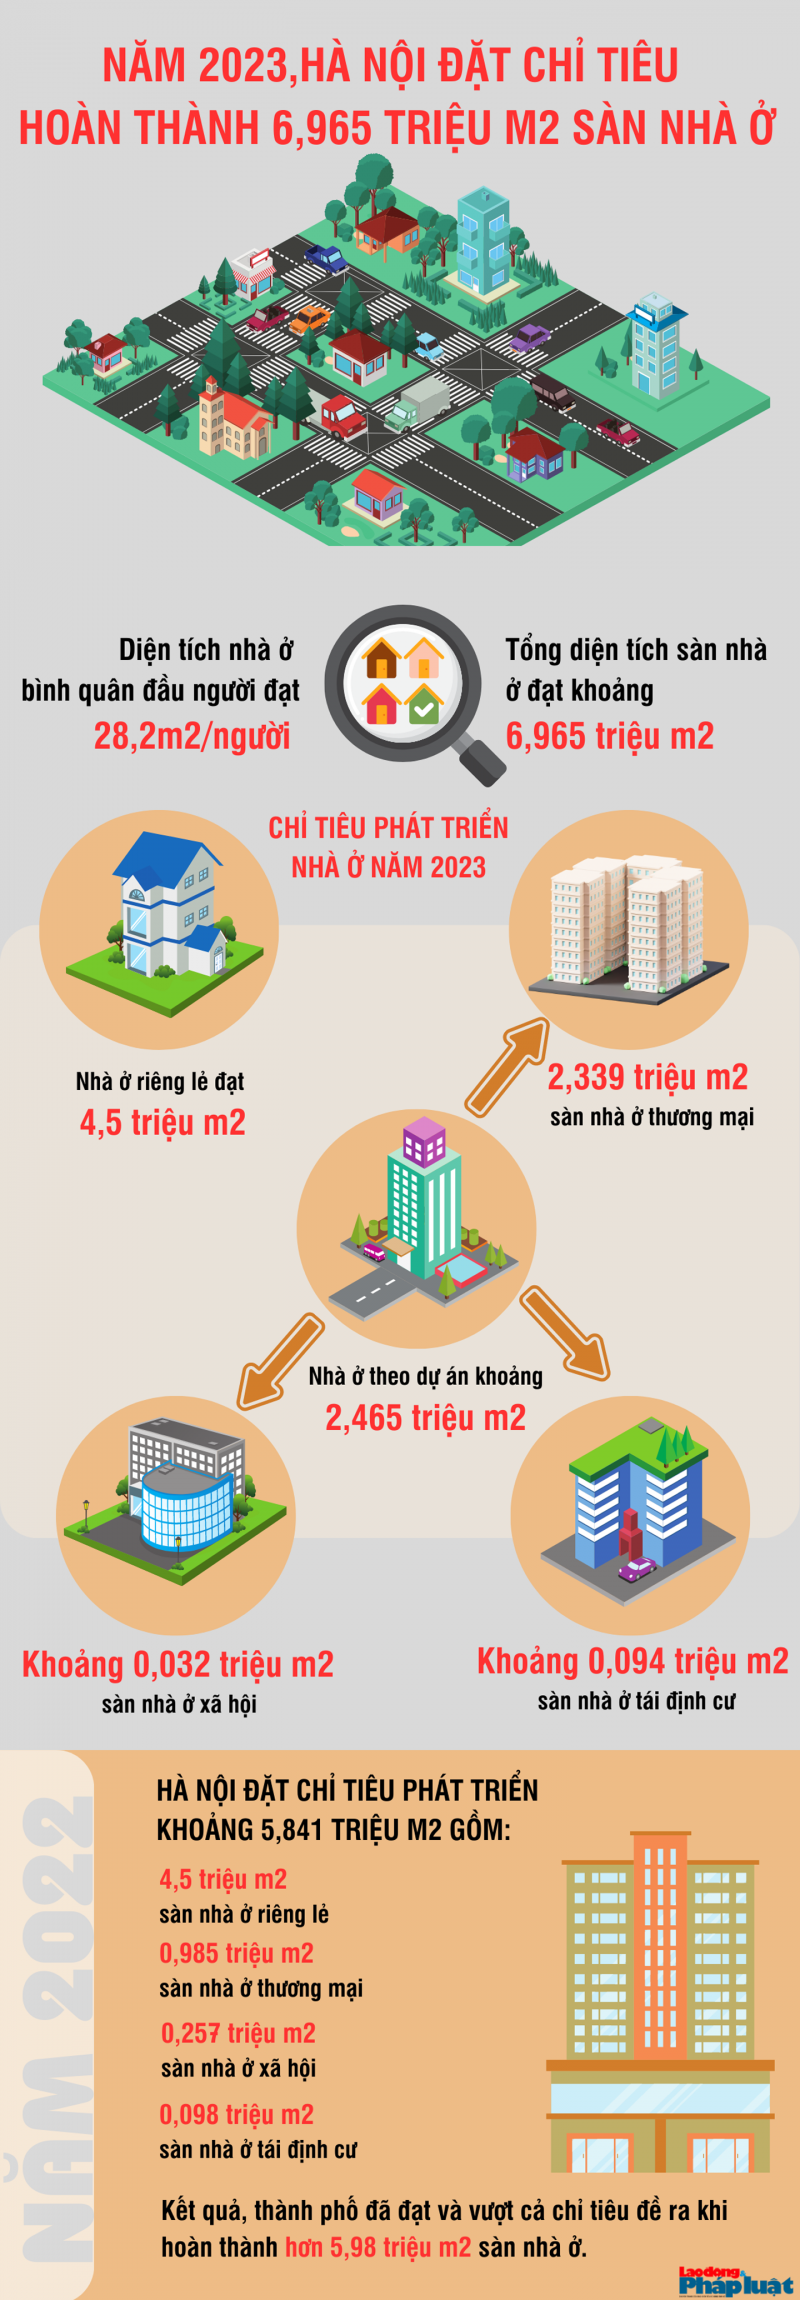 Năm 2023, Hà Nội đặt chỉ tiêu hoàn thành 6,965 triệu m2 sàn nhà ở